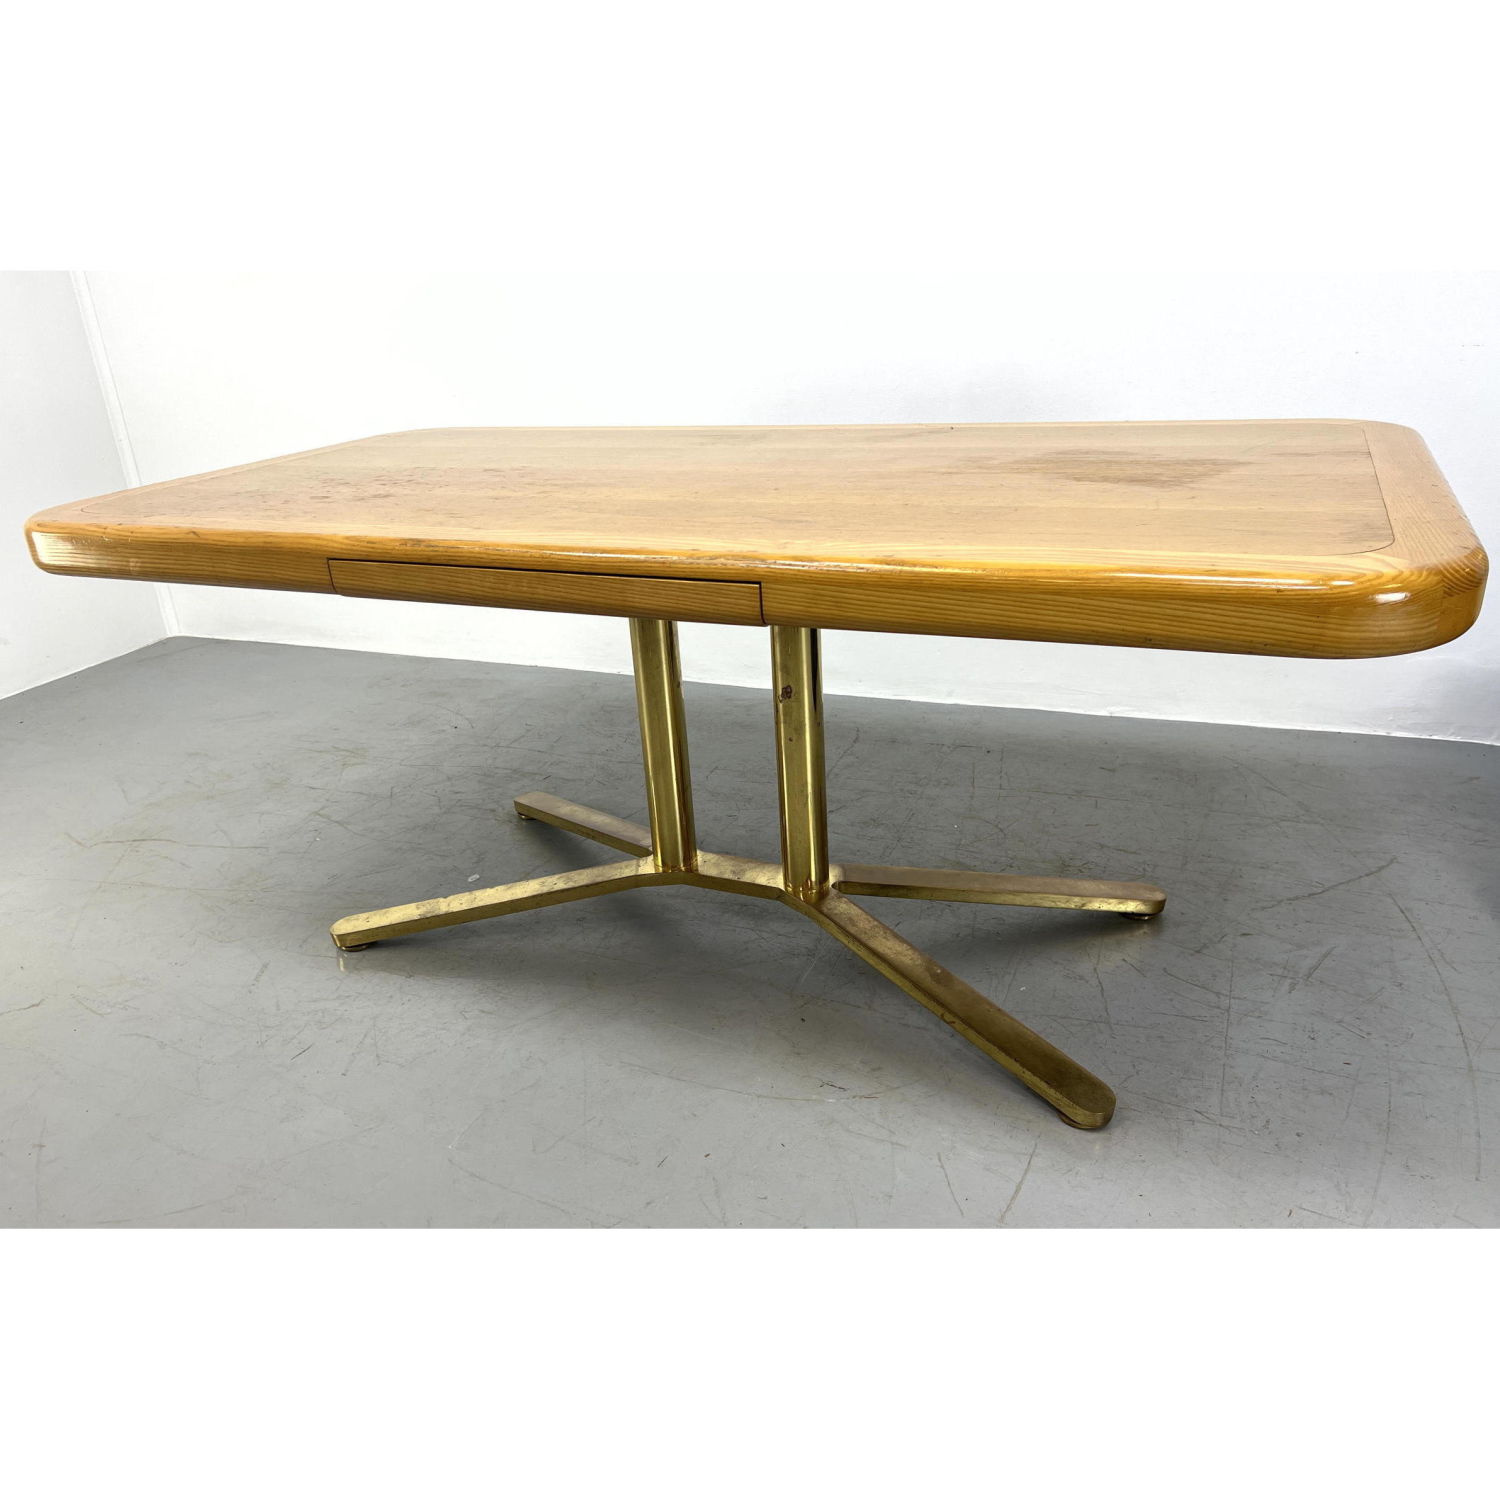 Modernist Oak Desk. Quality Design